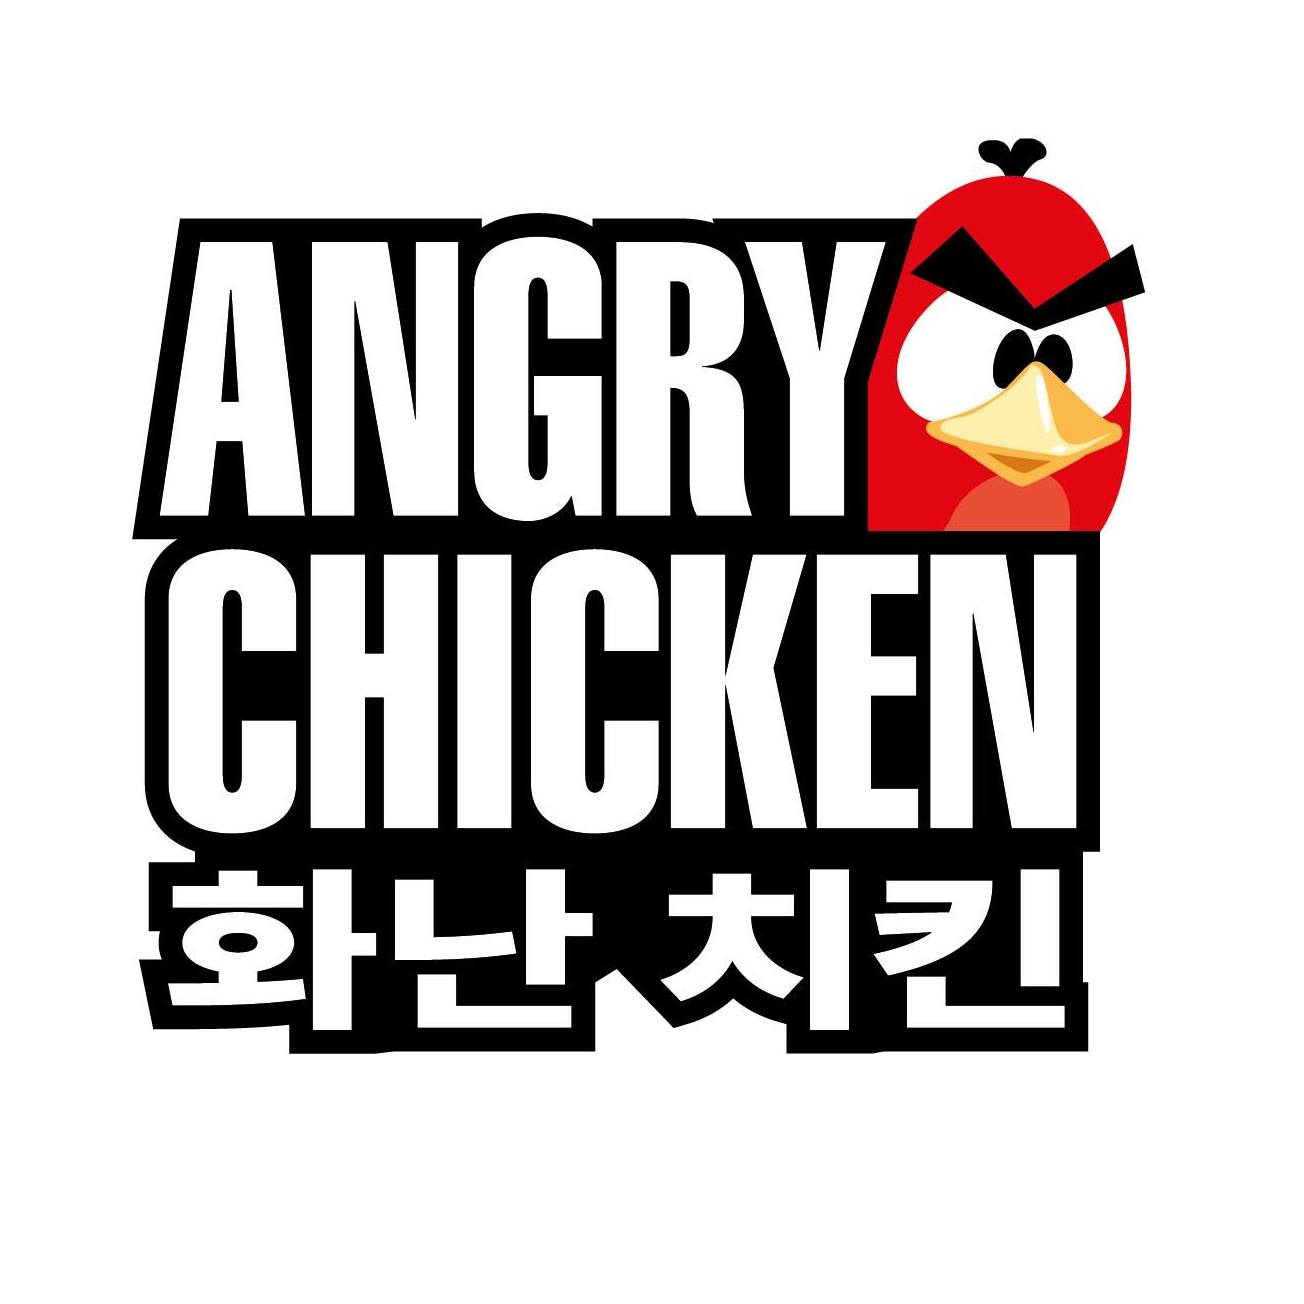 Angry Chicken Gutschein